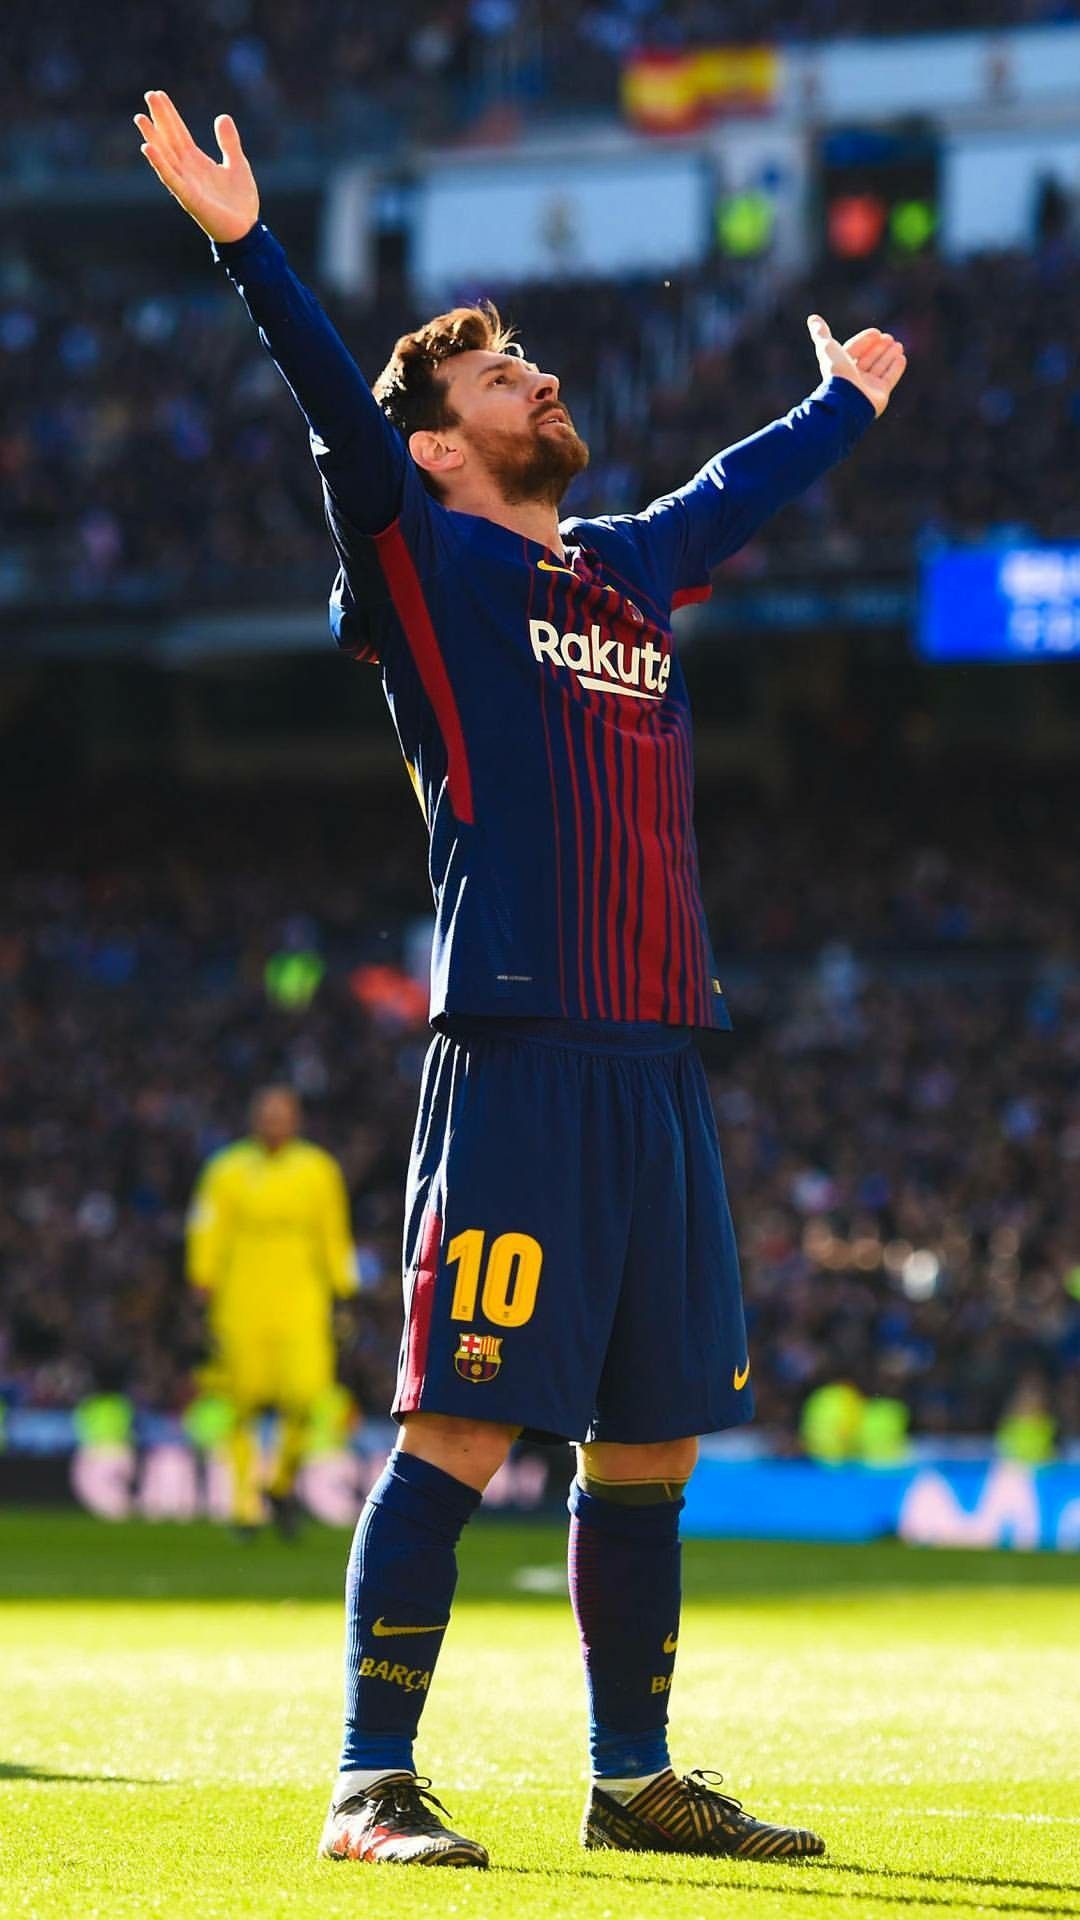 Messi Commemoration: Hãy cùng nhìn lại những khoảnh khắc đáng nhớ về Messi - siêu sao bóng đá hàng đầu thế giới. Những bức ảnh đầy cảm xúc về sự nghiệp và thành tích của anh sẽ giúp chúng ta hiểu rõ hơn về tài năng và sự đóng góp của Messi cho cả làng bóng đá.